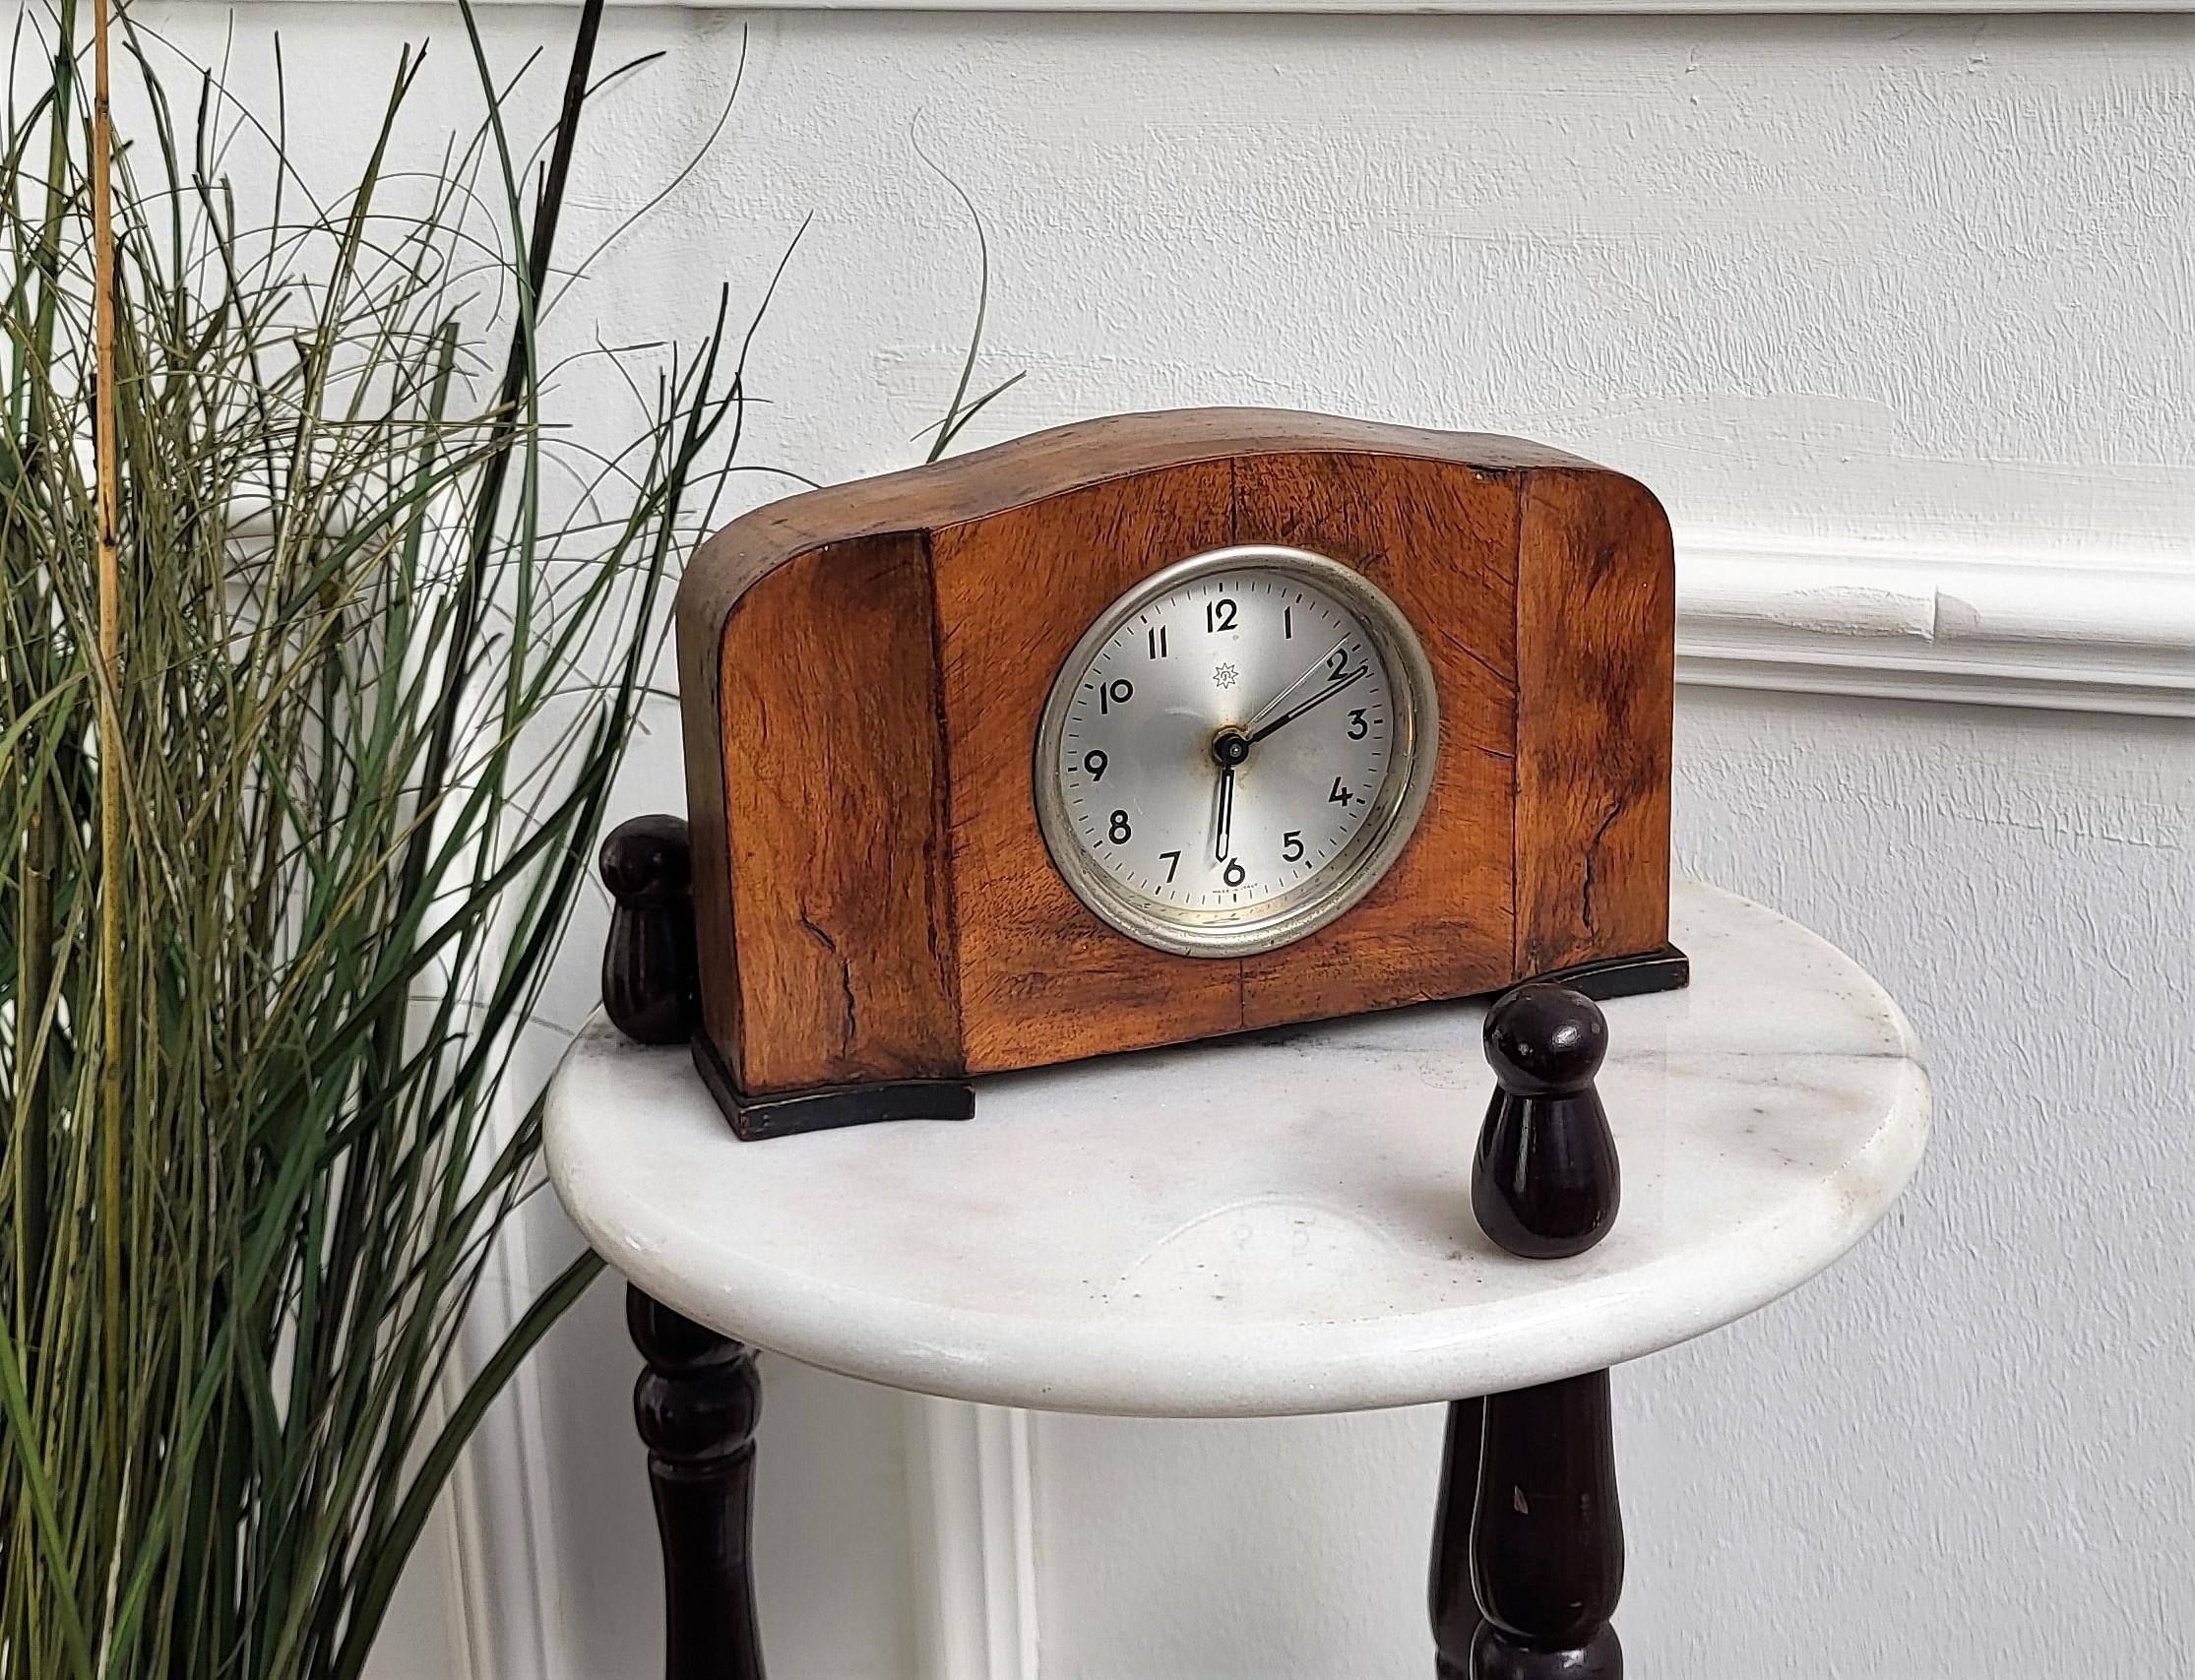 Art Deco-Stil Walnussfurnier und verchromte Elemente Kaminsims Tisch Schreibtisch Wecker, von Junghans, eine deutsche Uhrenfirma, aber Made in Italy in ihrer Werkstatt in Venedig, die von 1899 bis 1930 betrieben wurde. Das Stück ist in